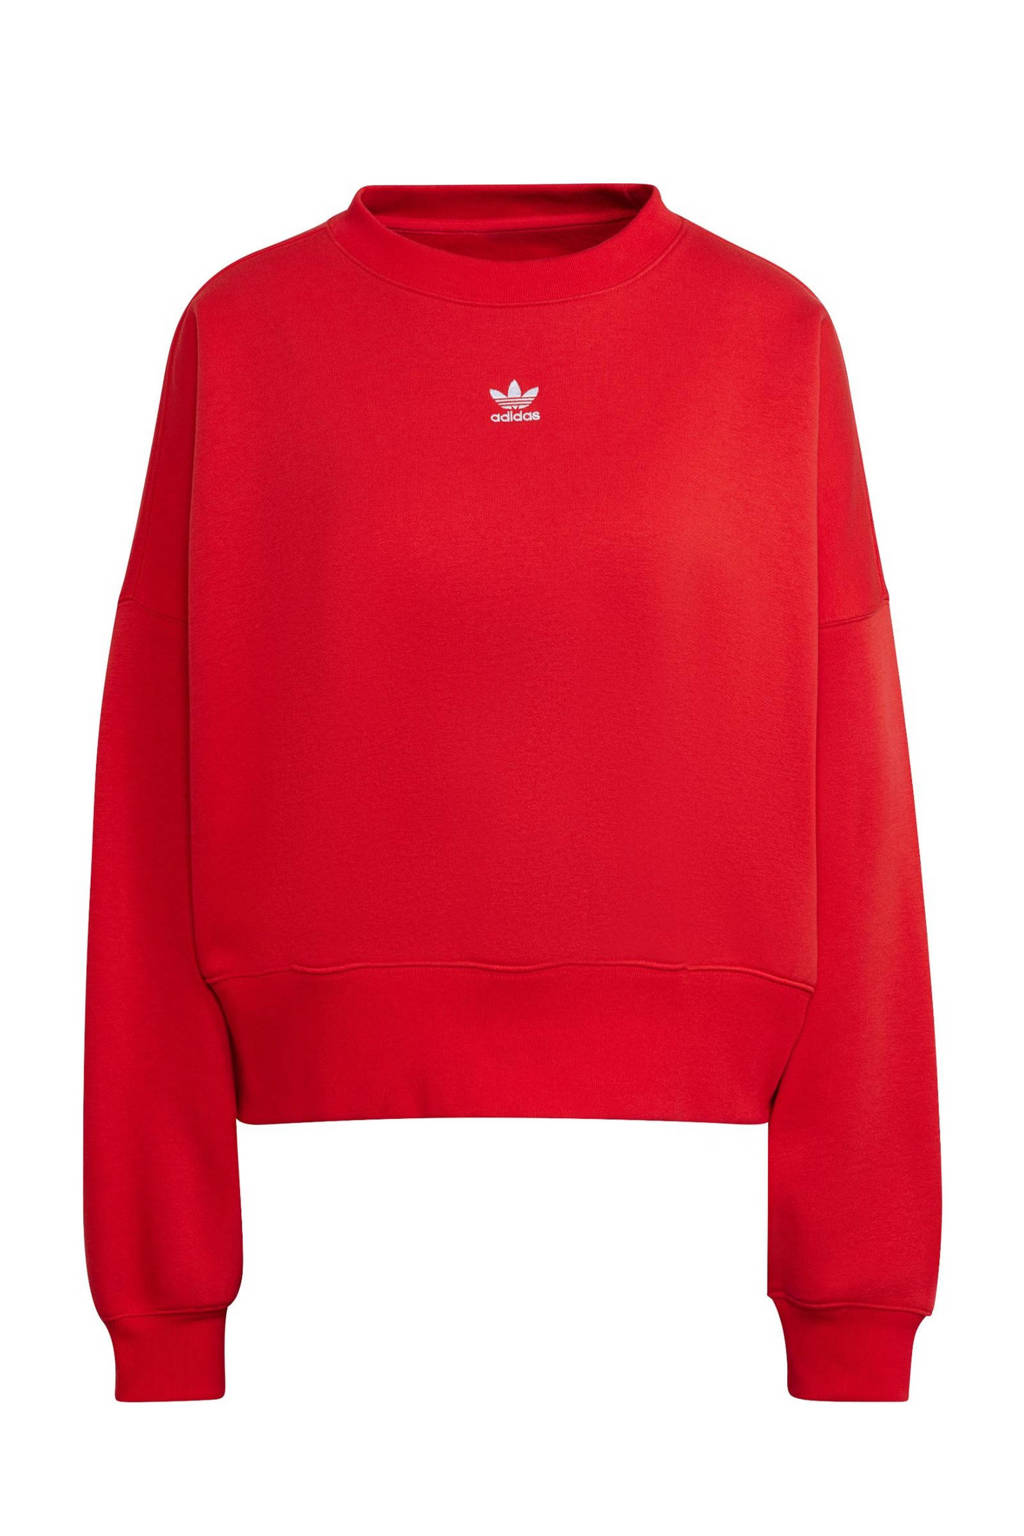 Rode dames adidas Originals sweater van katoen met lange mouwen, ronde hals en geribde boorden